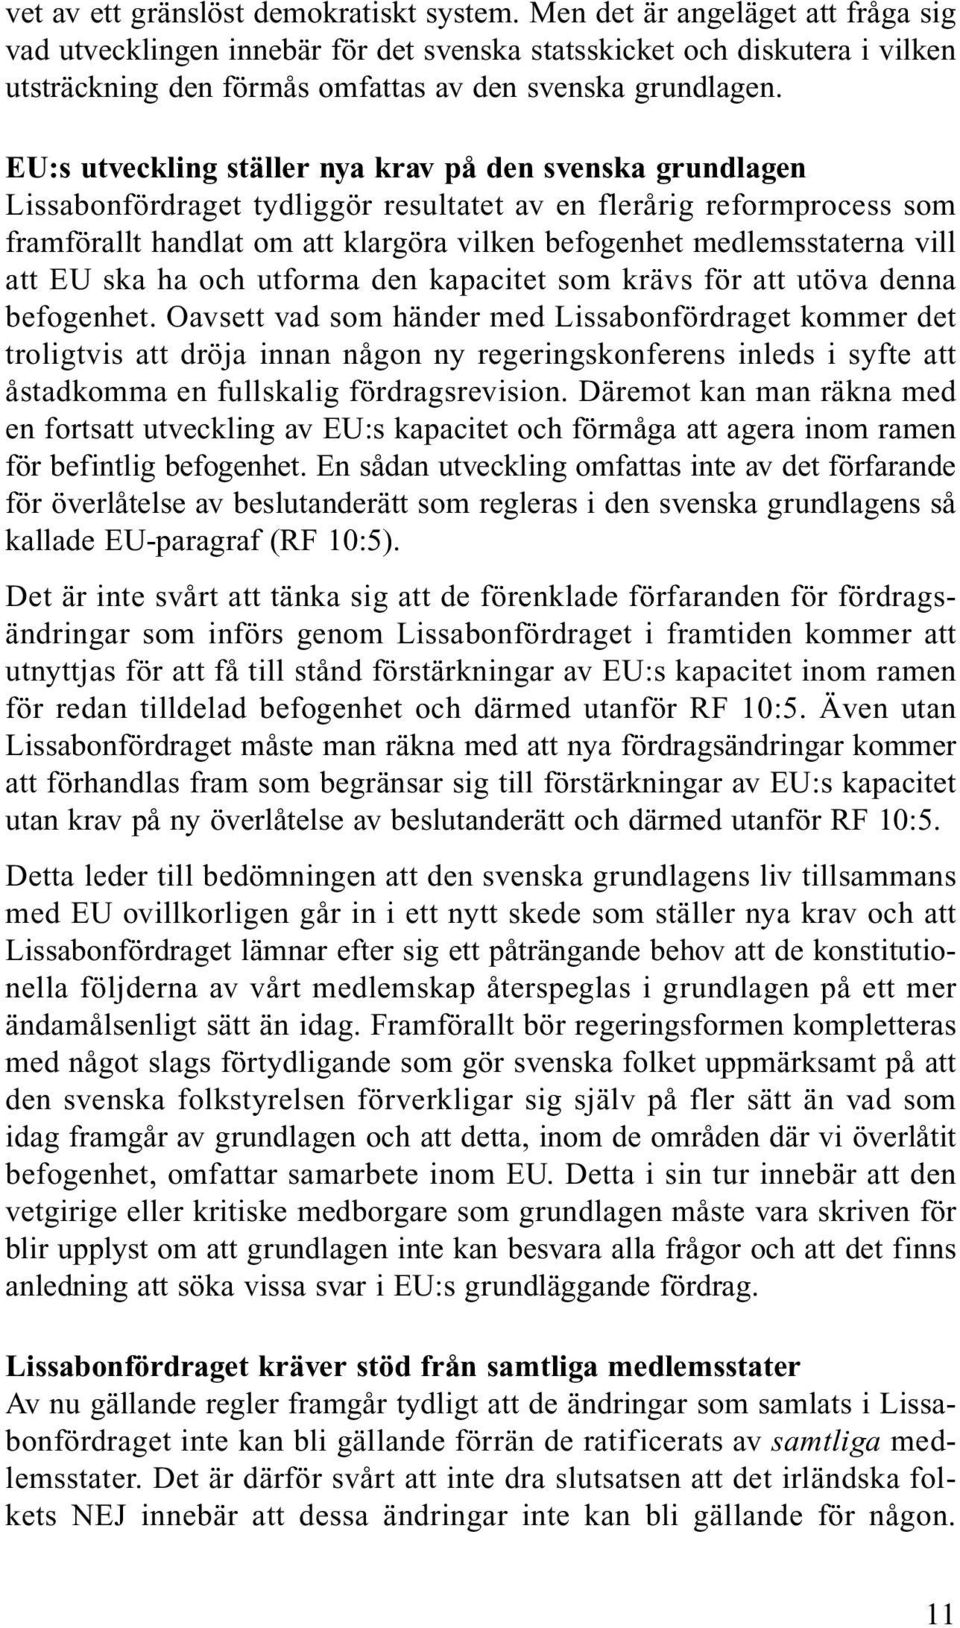 EU:s utveckling ställer nya krav på den svenska grundlagen Lissabonfördraget tydliggör resultatet av en flerårig reformprocess som framförallt handlat om att klargöra vilken befogenhet